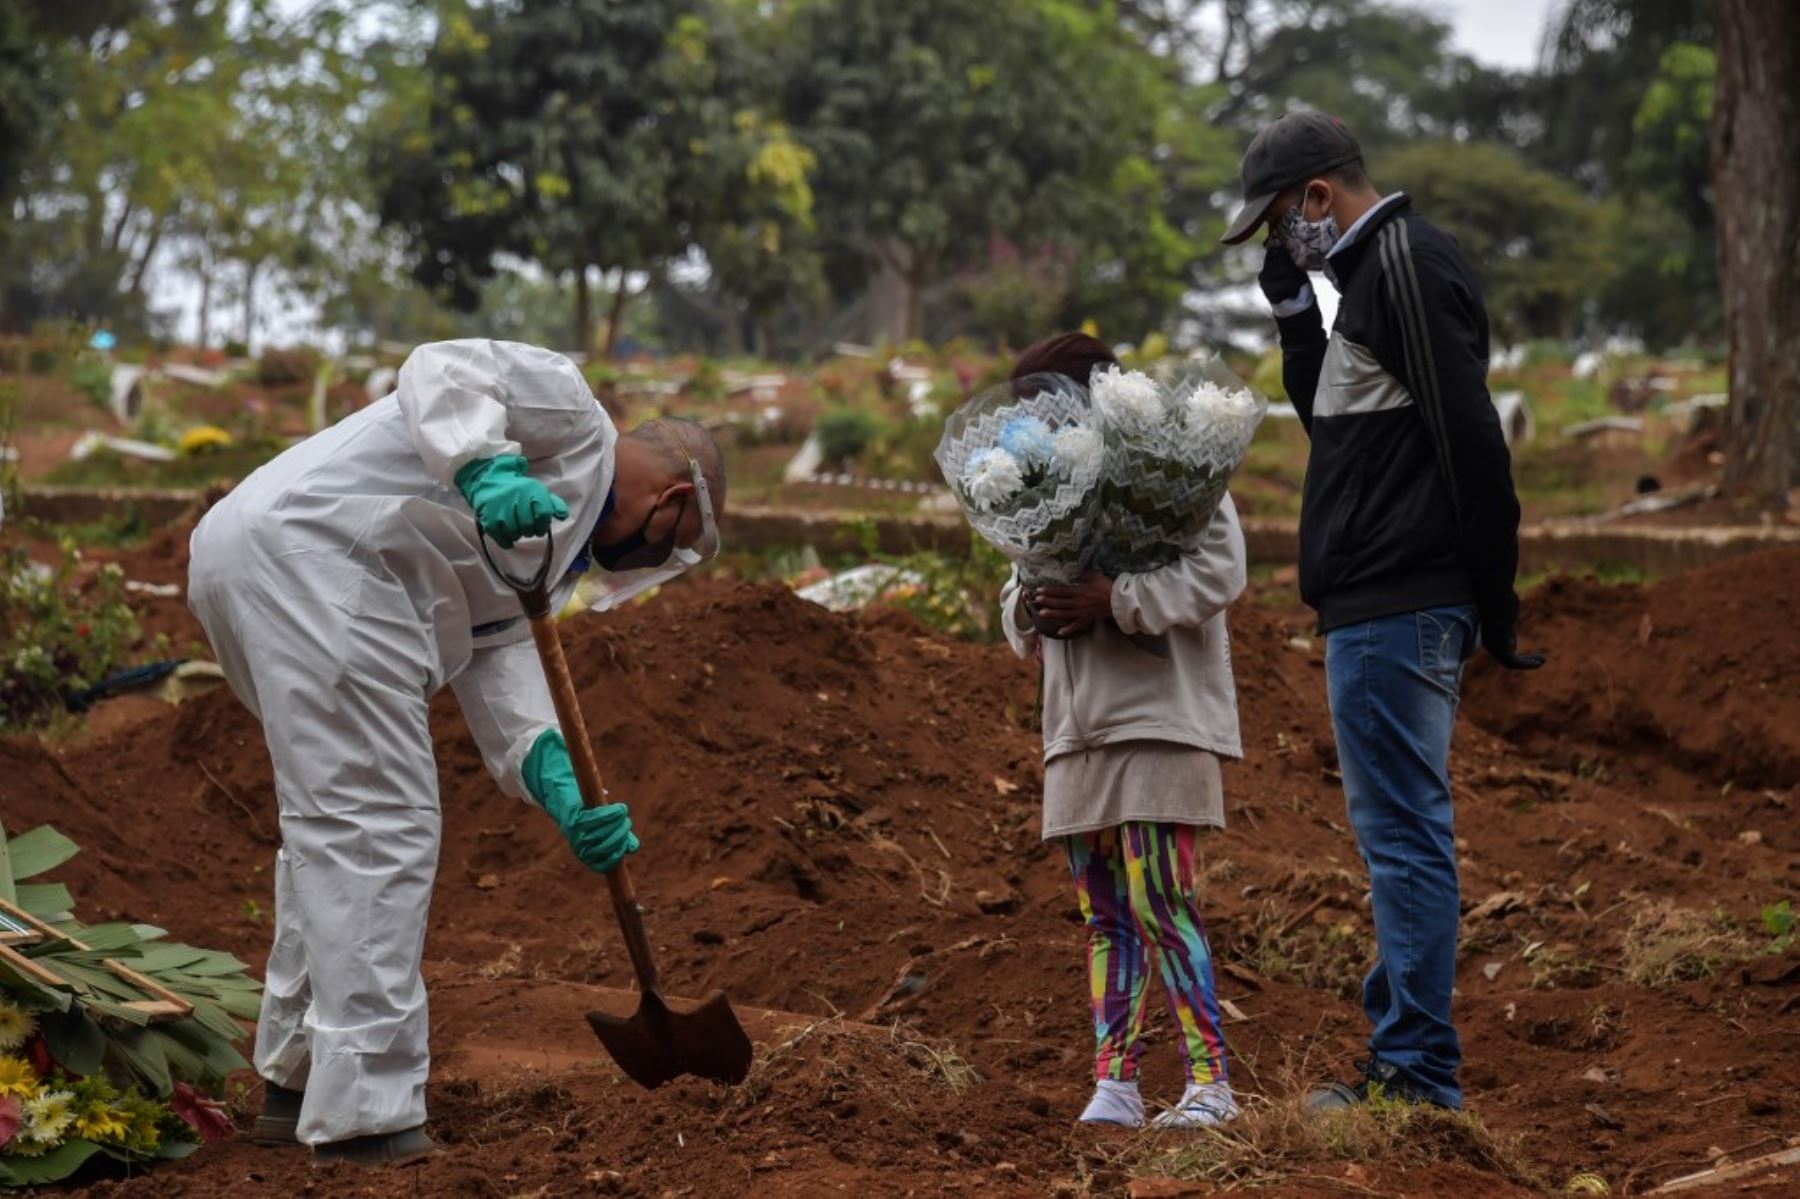 Un empleado cava una tumba junto a familiares de una persona que murió de COVID-19 en el cementerio de Vila Formosa, en las afueras de Sao Paulo, Brasil. Foto: AFP